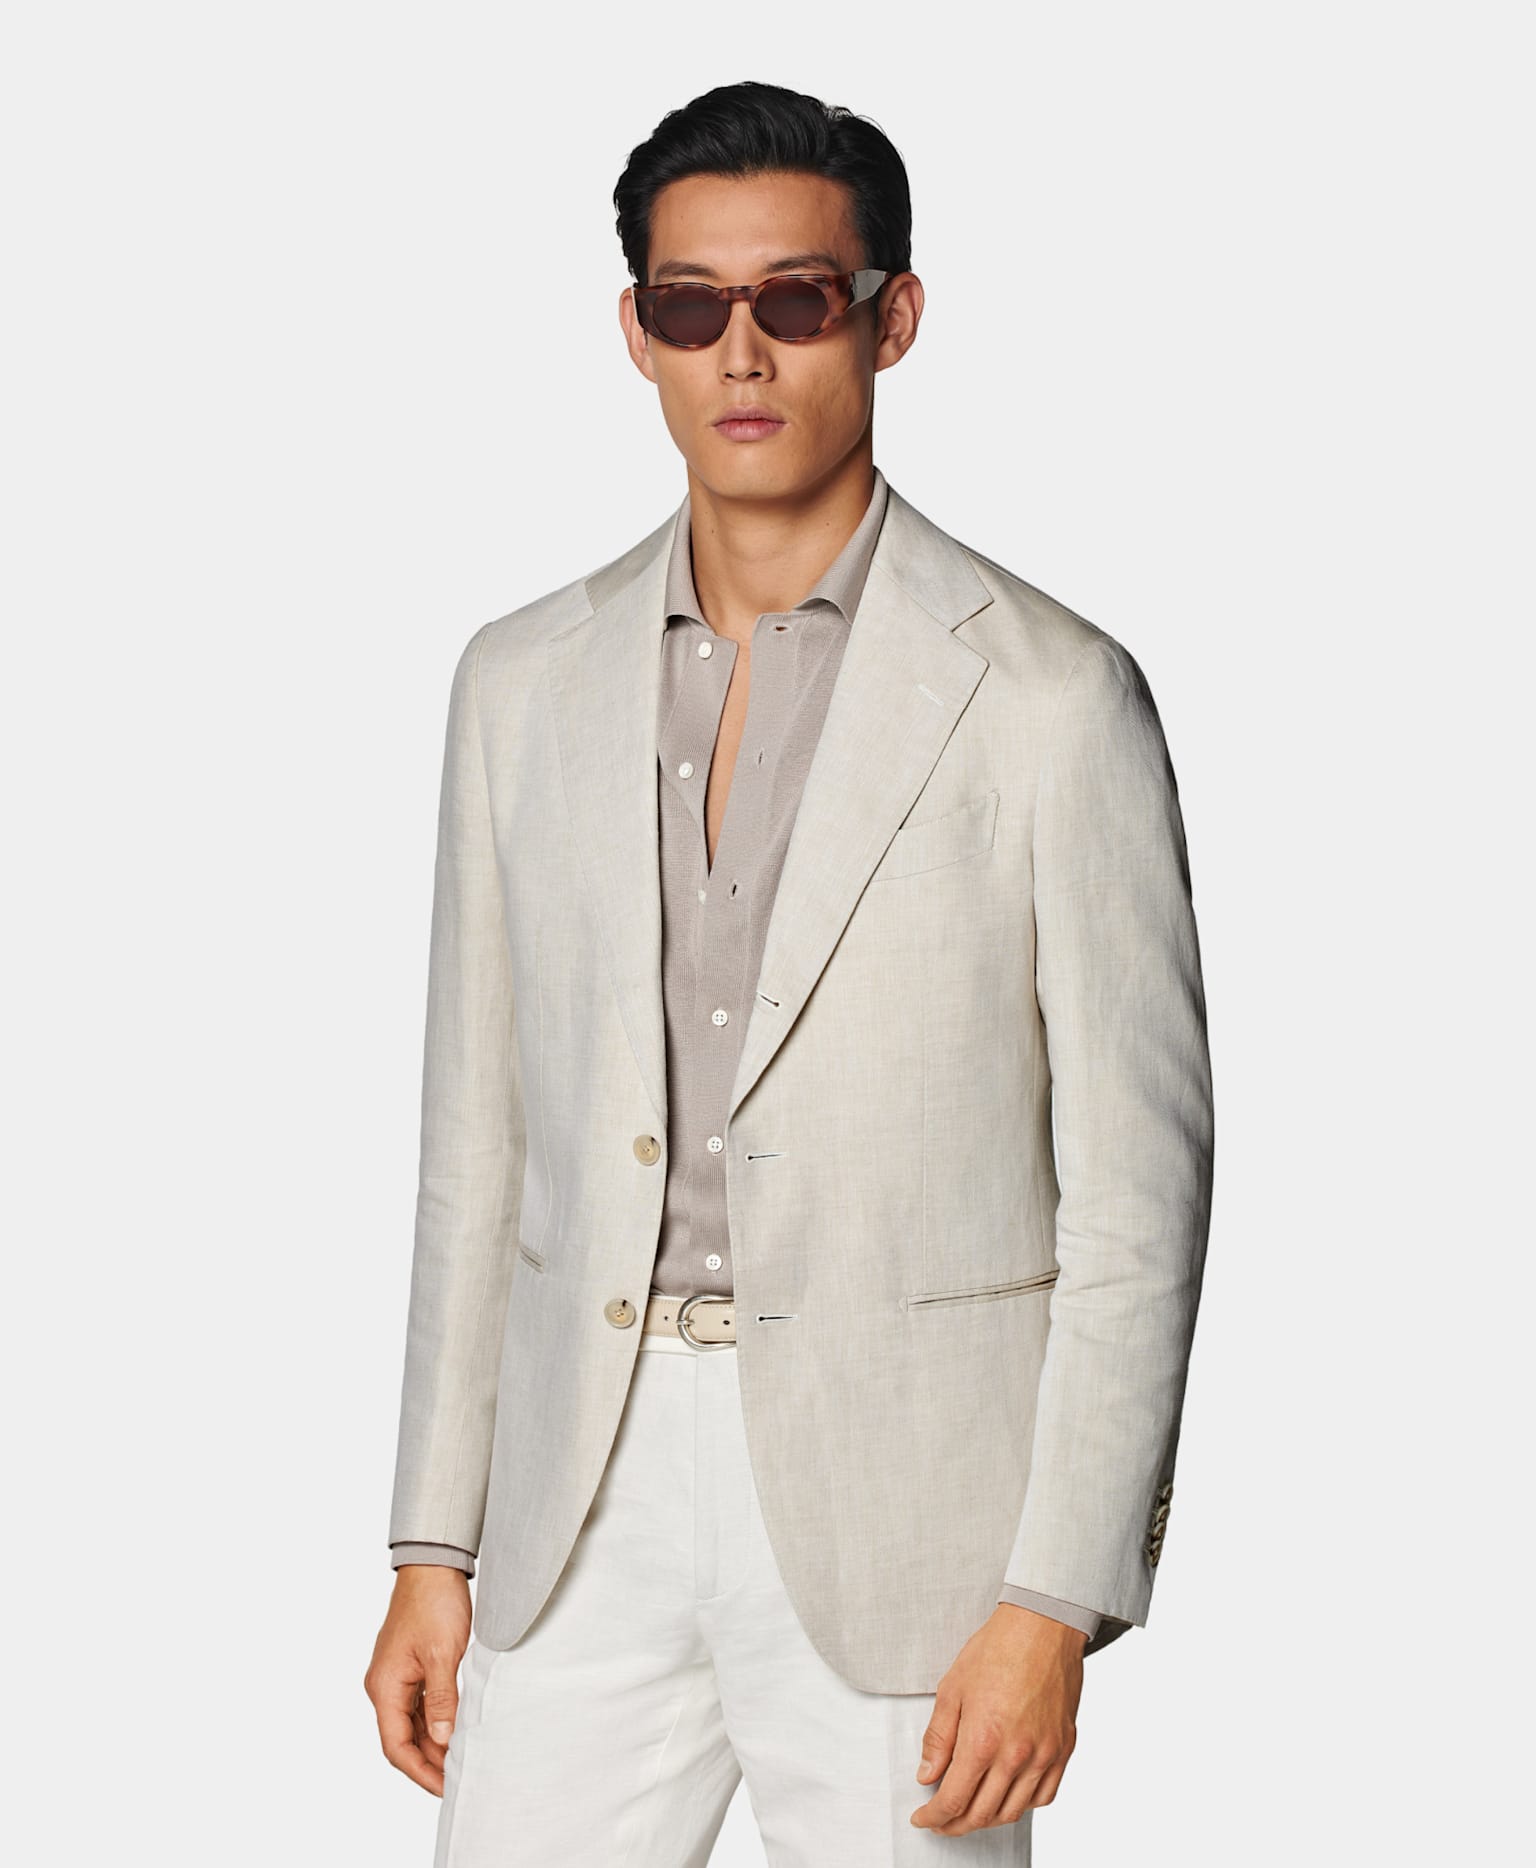 Sandfarbenes Sakko mit Strickshirt in Taupe, Ledergürtel in Off-White und weißer Hose.